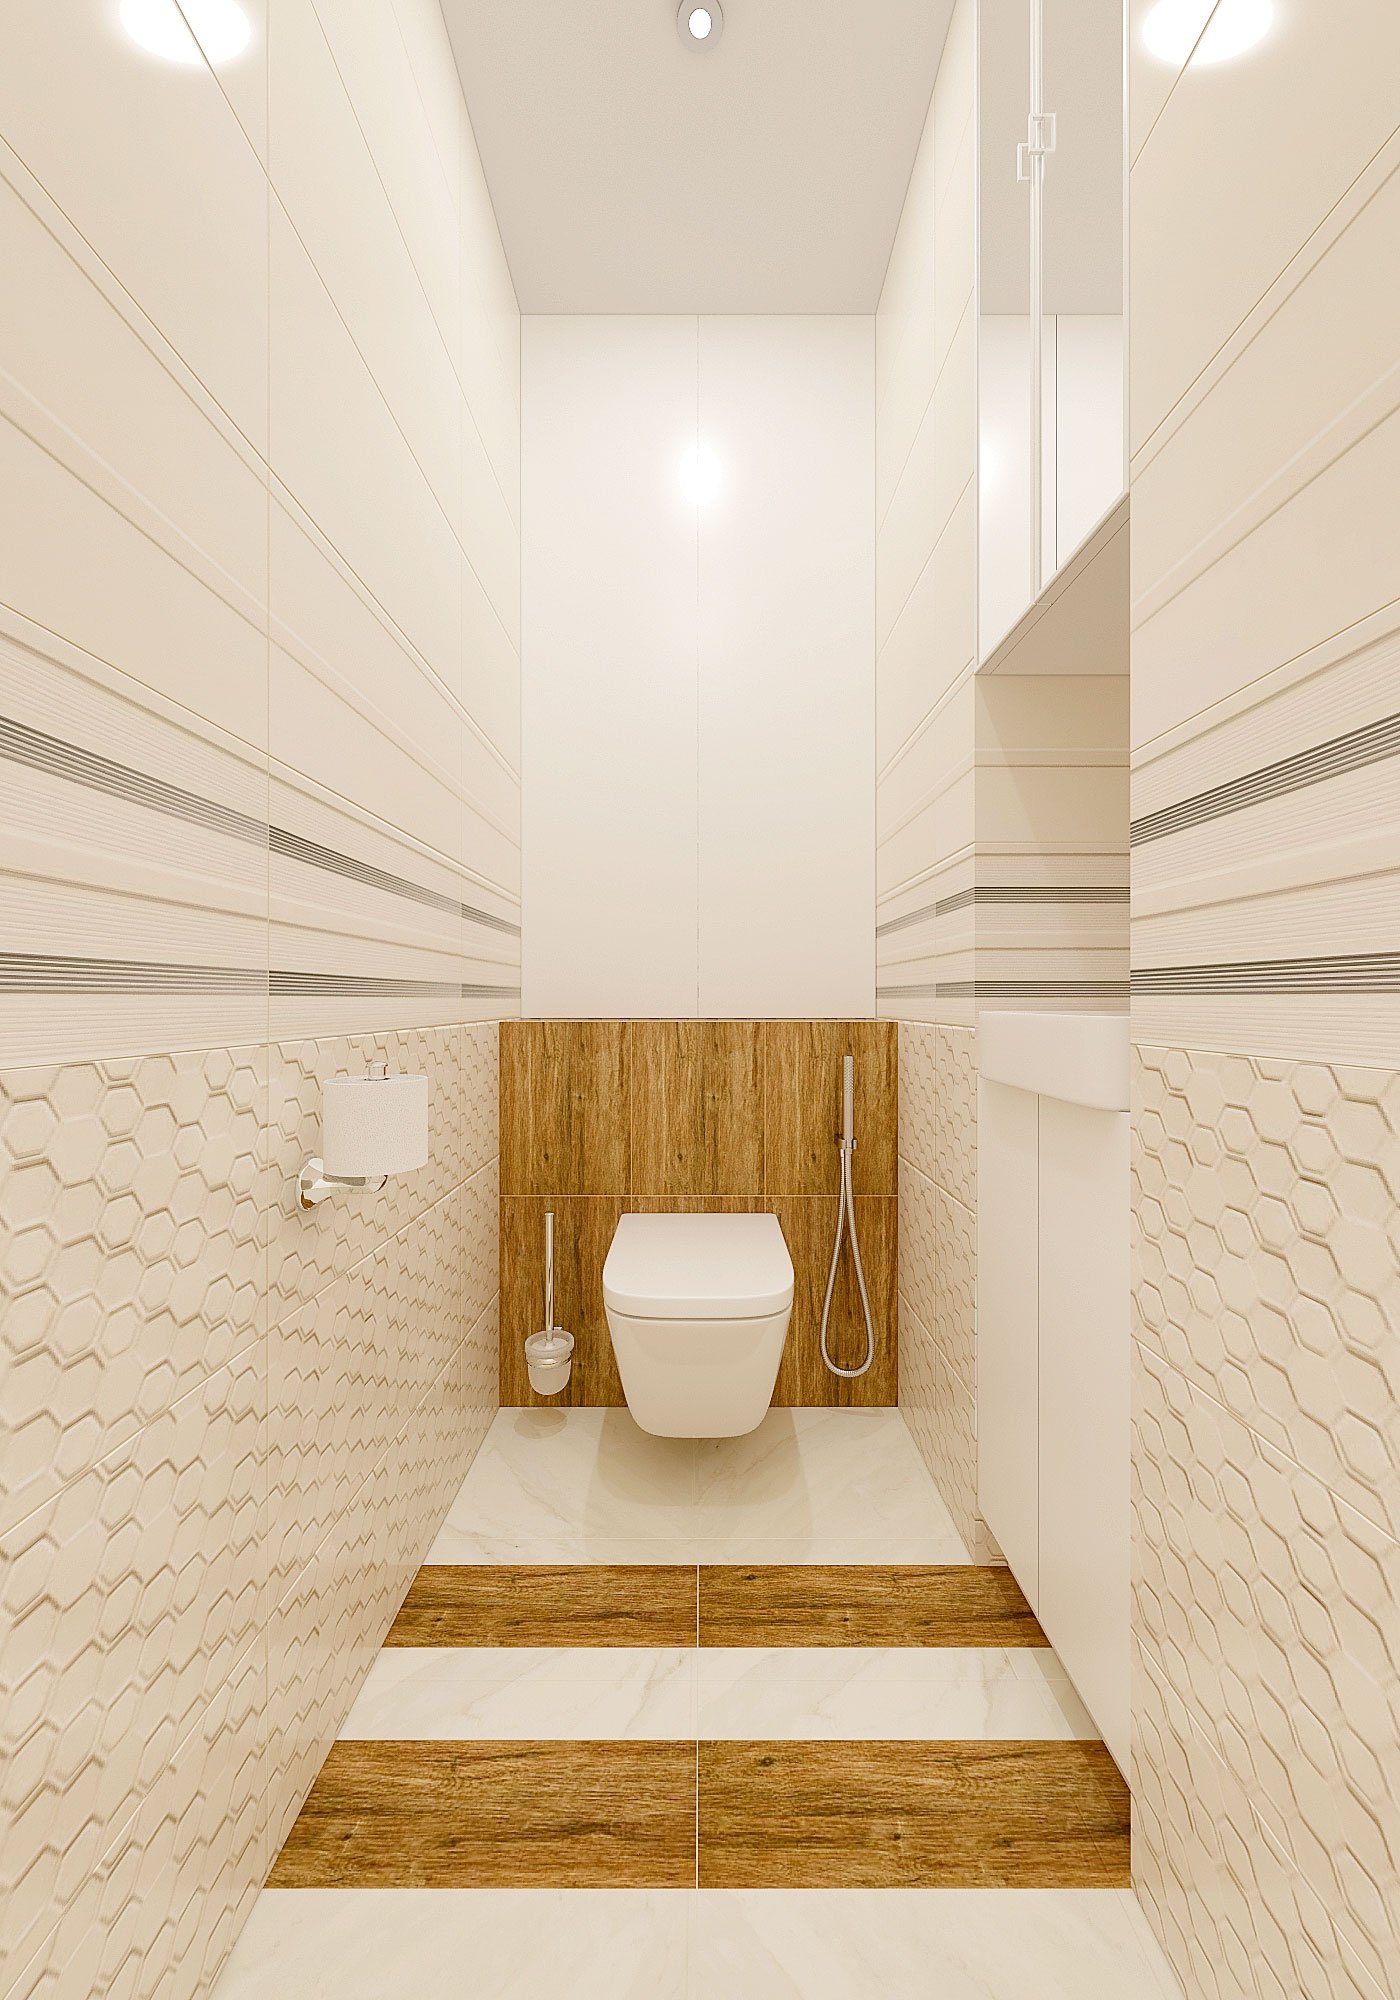 дизайн интерьера туалета в современном стиле, Гомель 2018, фото №4